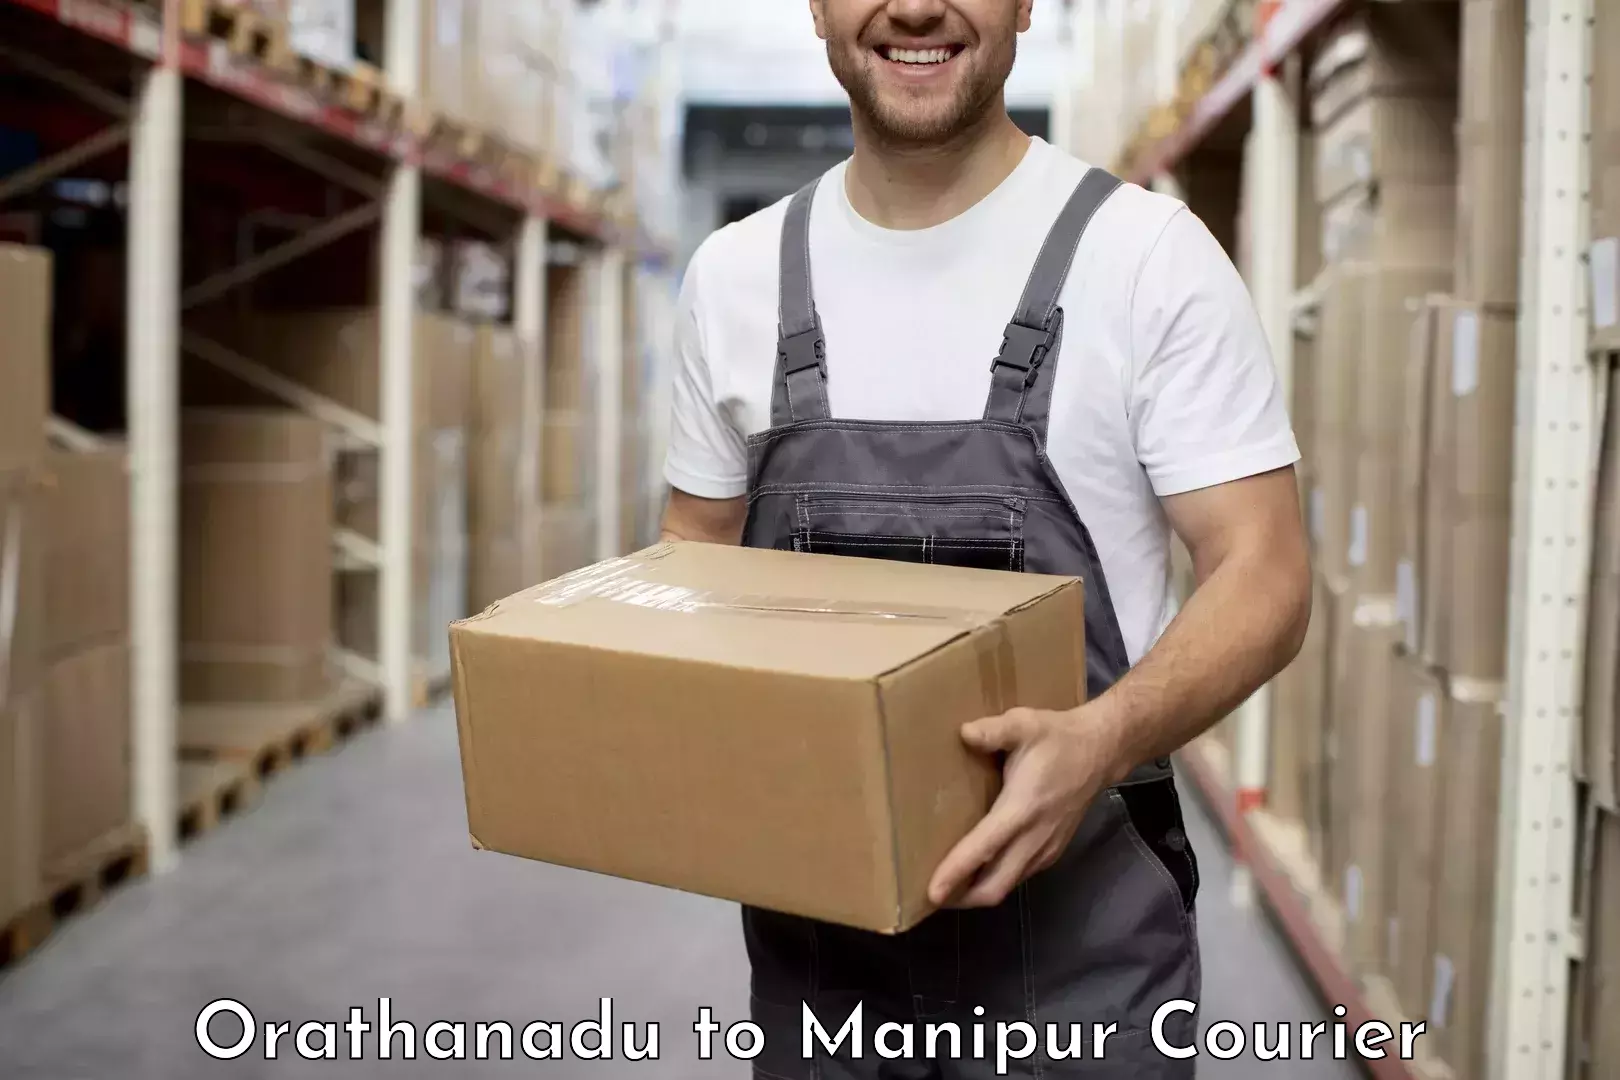 Courier service comparison Orathanadu to Churachandpur